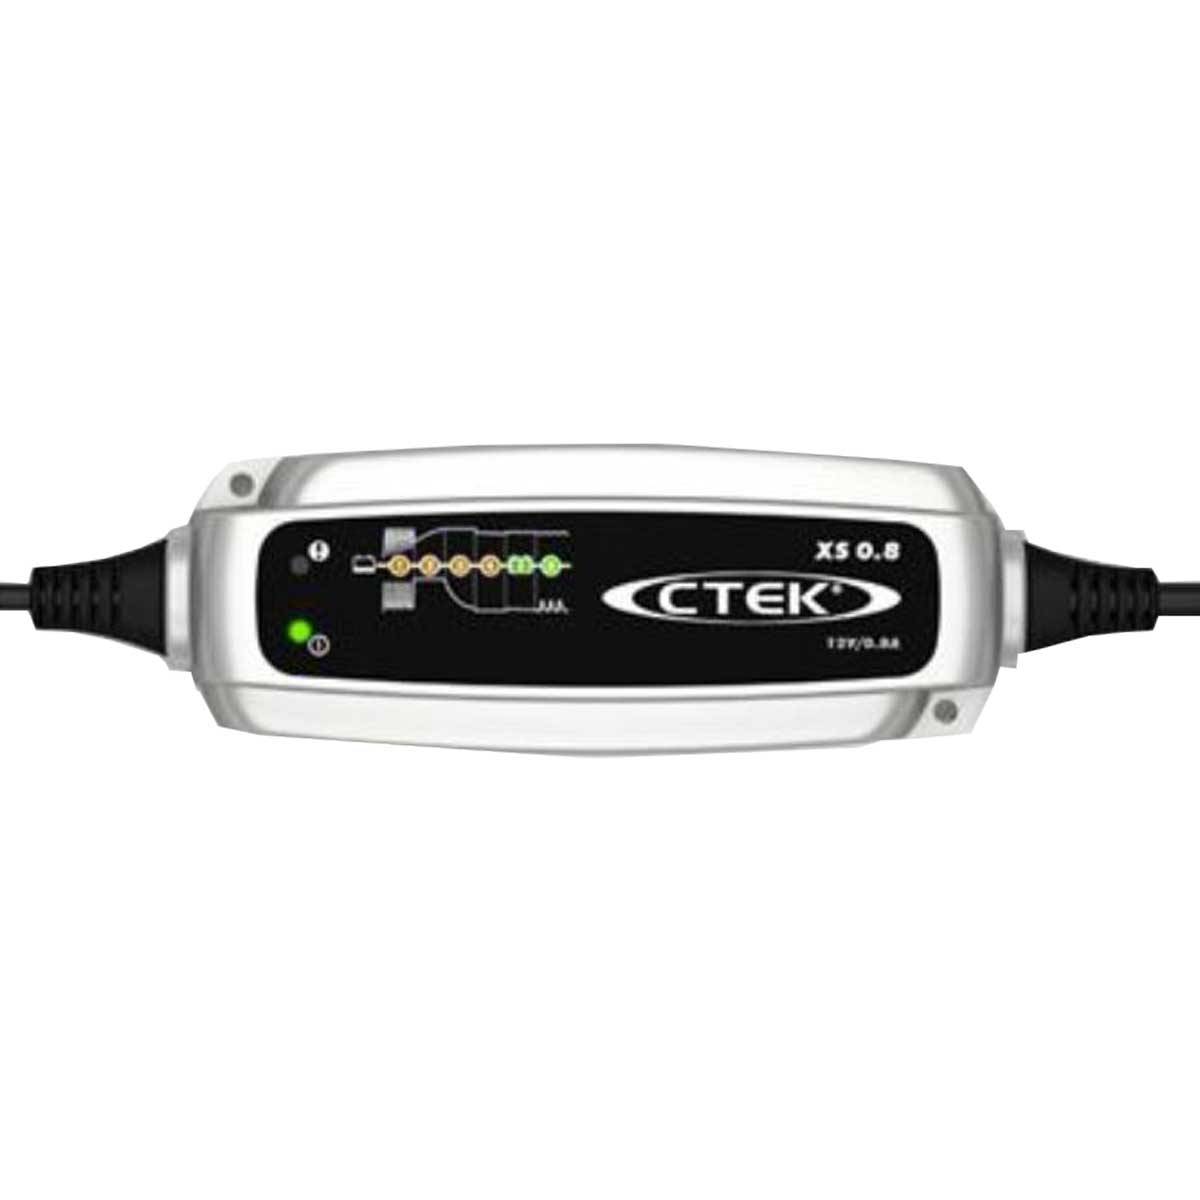 CTEK XS 0.8 Caricabatterie per batterie al piombo 12V 800mA corrente di carica ad alta frequenza